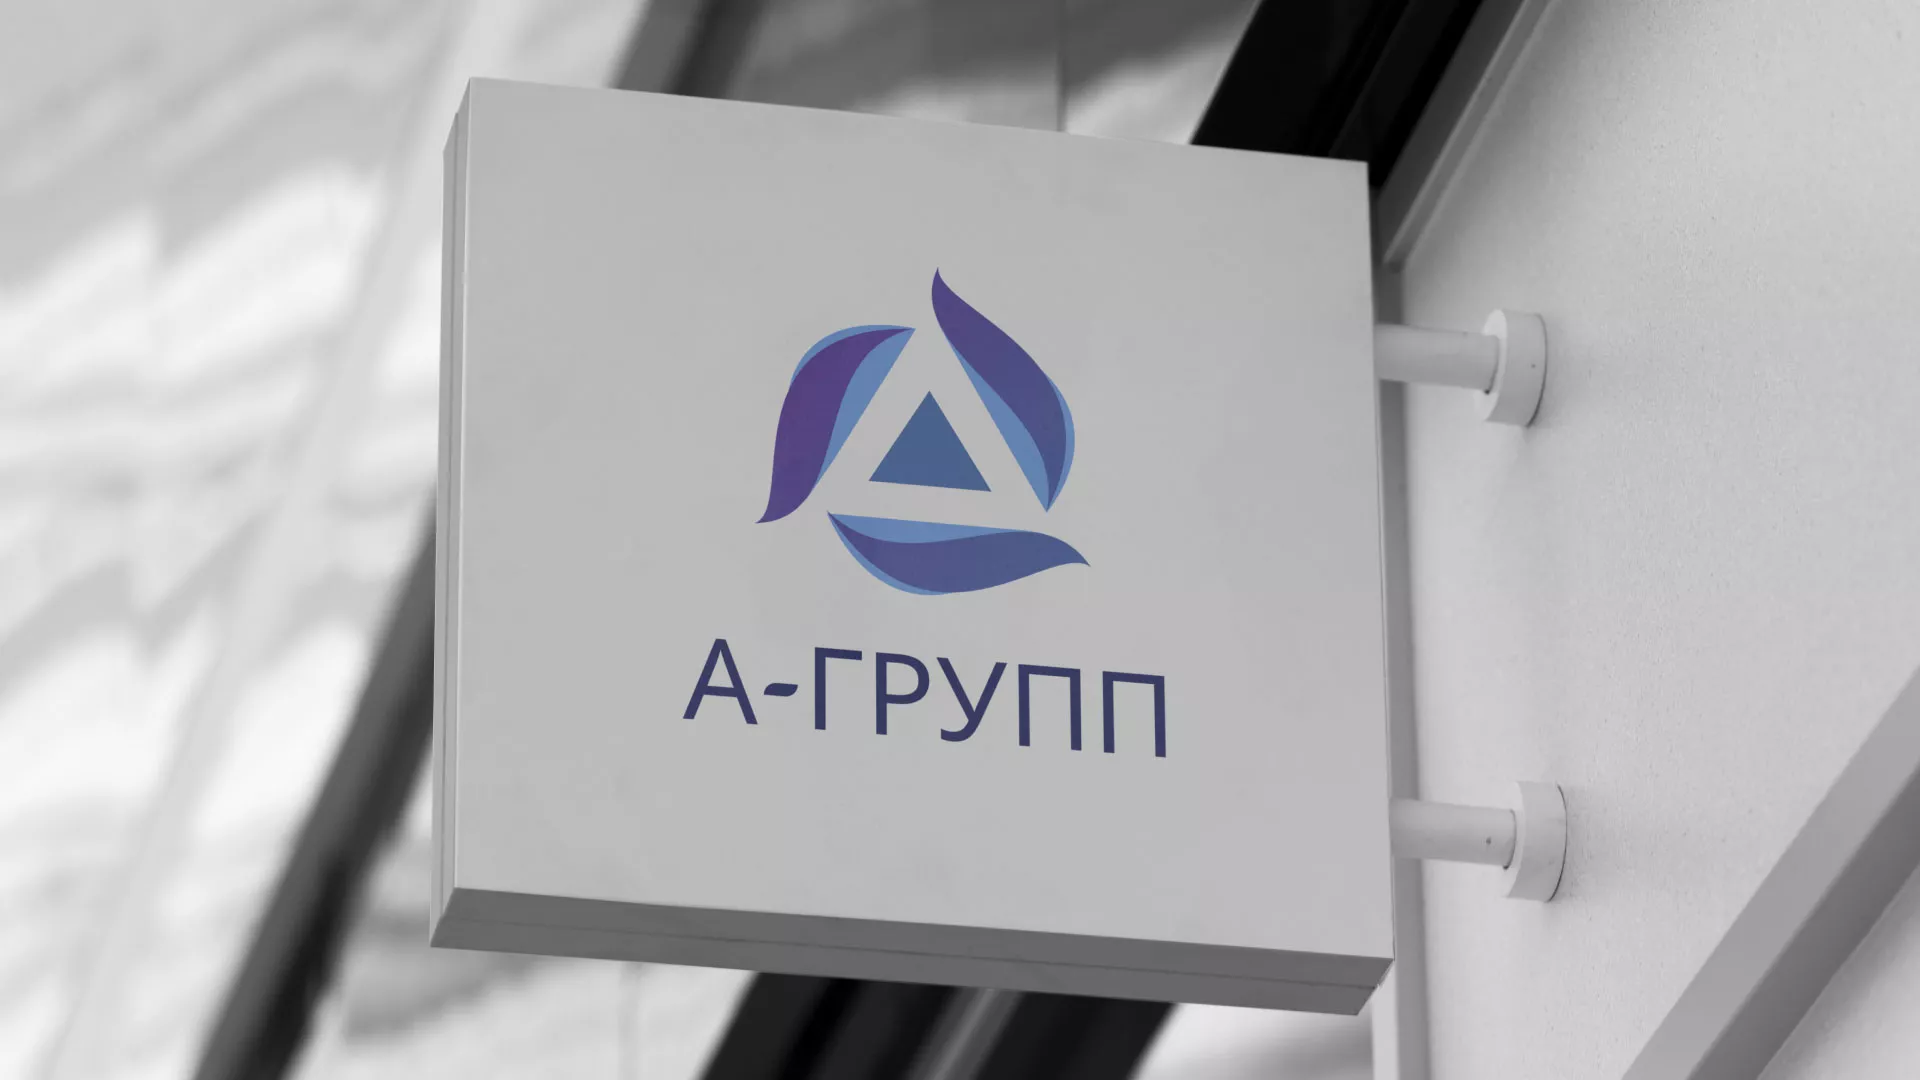 Создание логотипа компании «А-ГРУПП» в Зиме